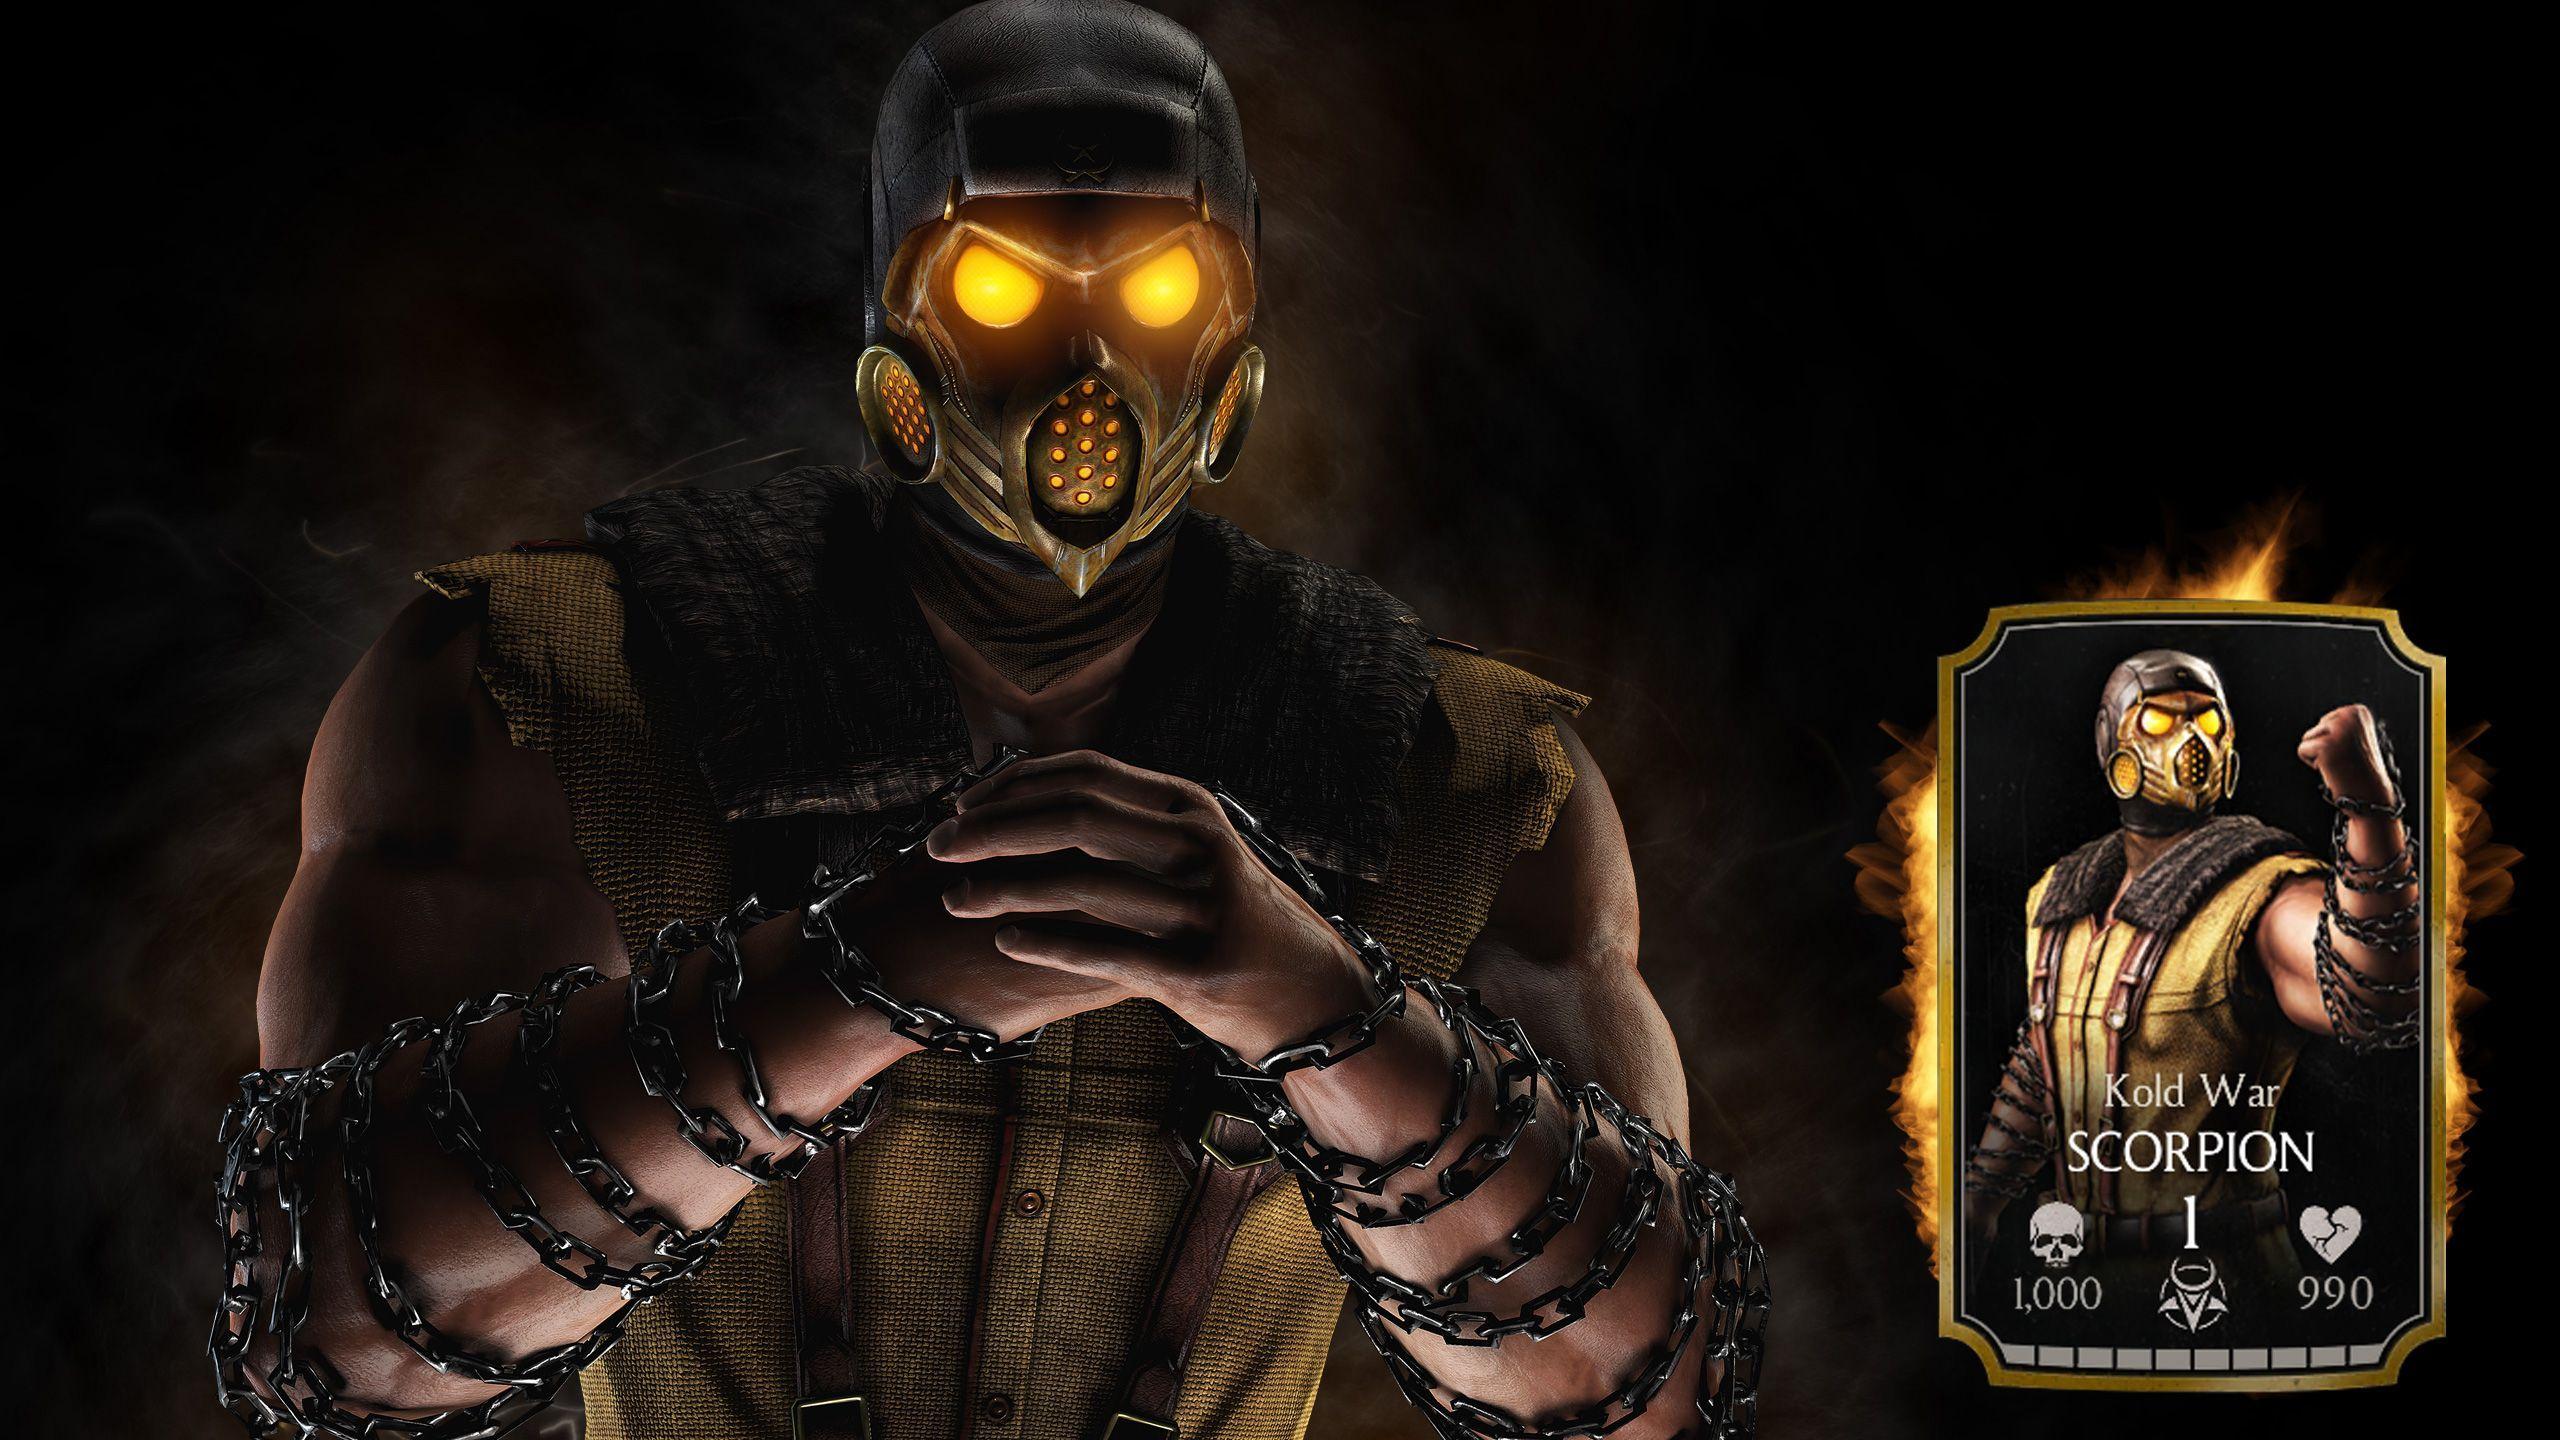 Mortal Kombat X HD Wallpaper, Awesome Mortal Kombat X Picture